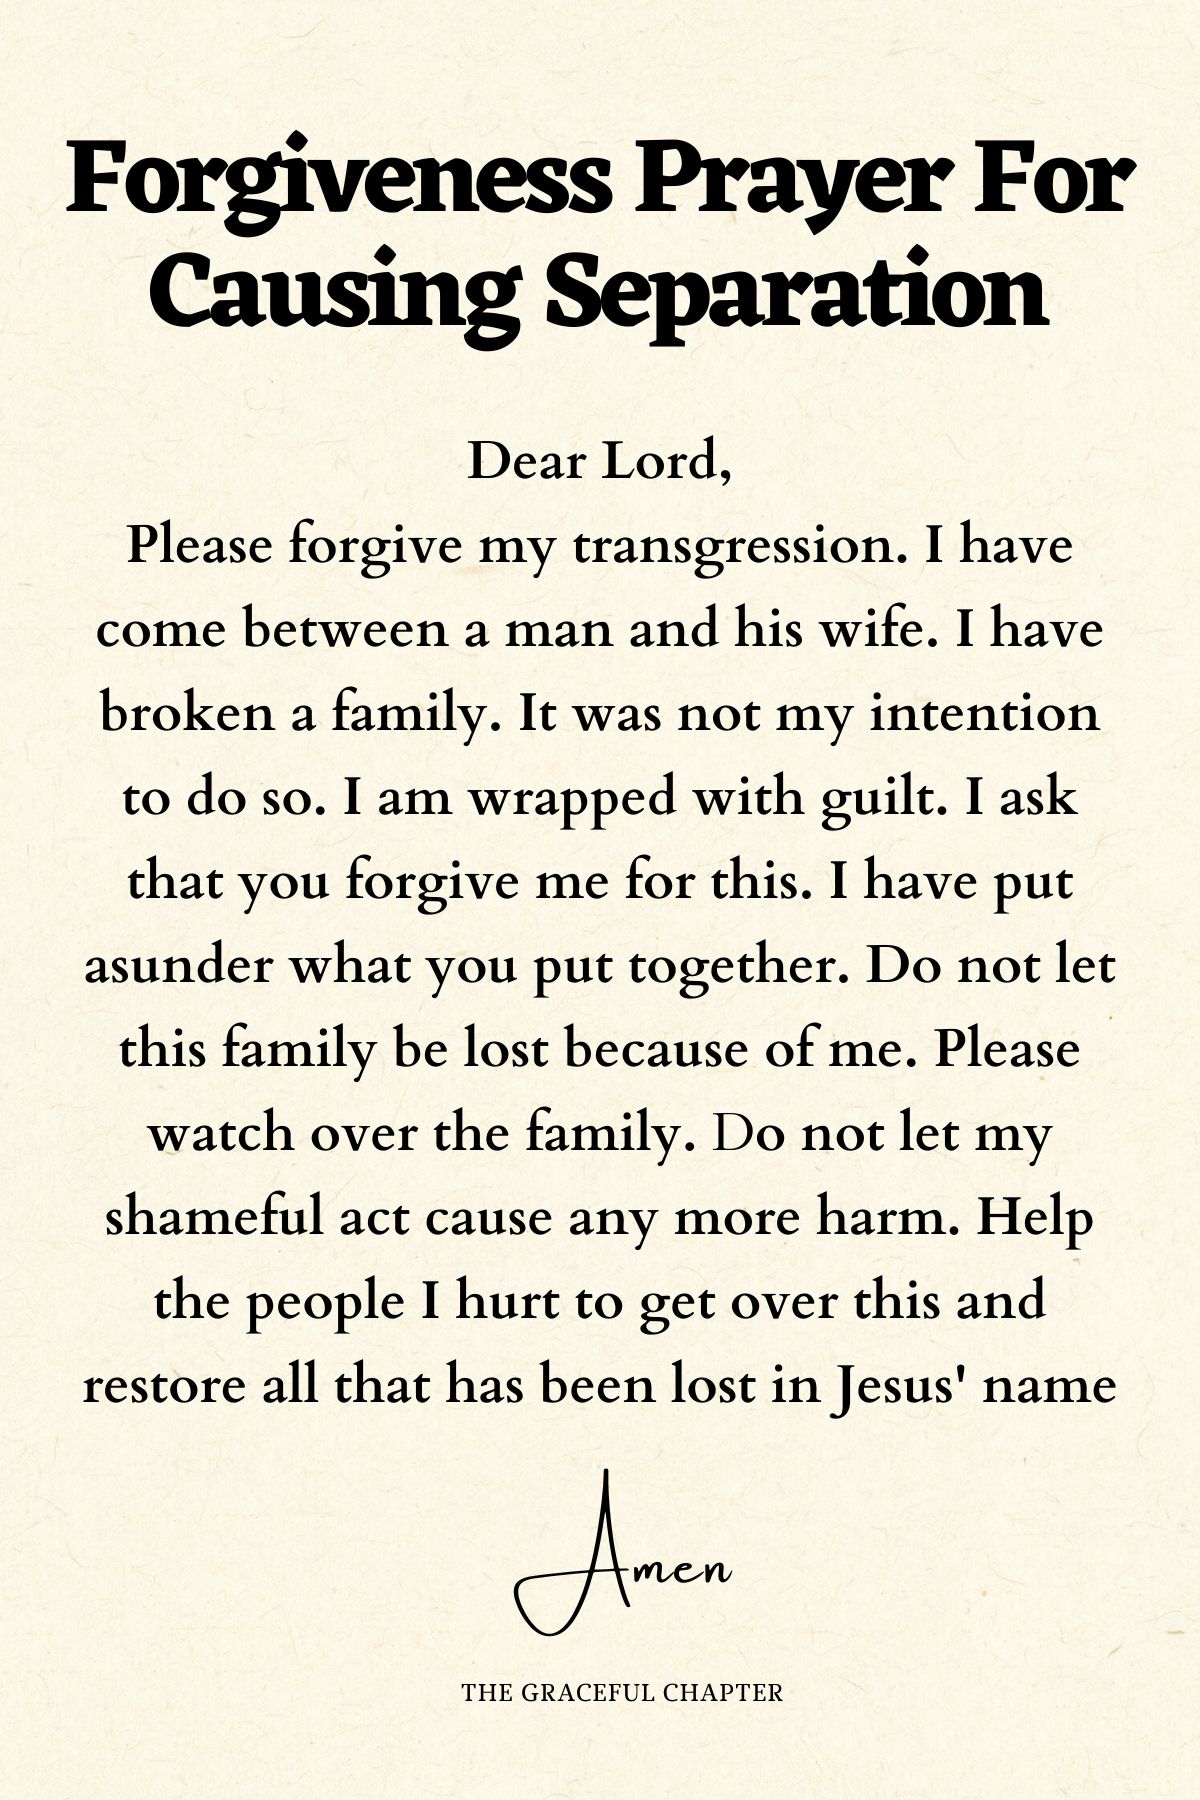 Forgiveness prayer for causing separation